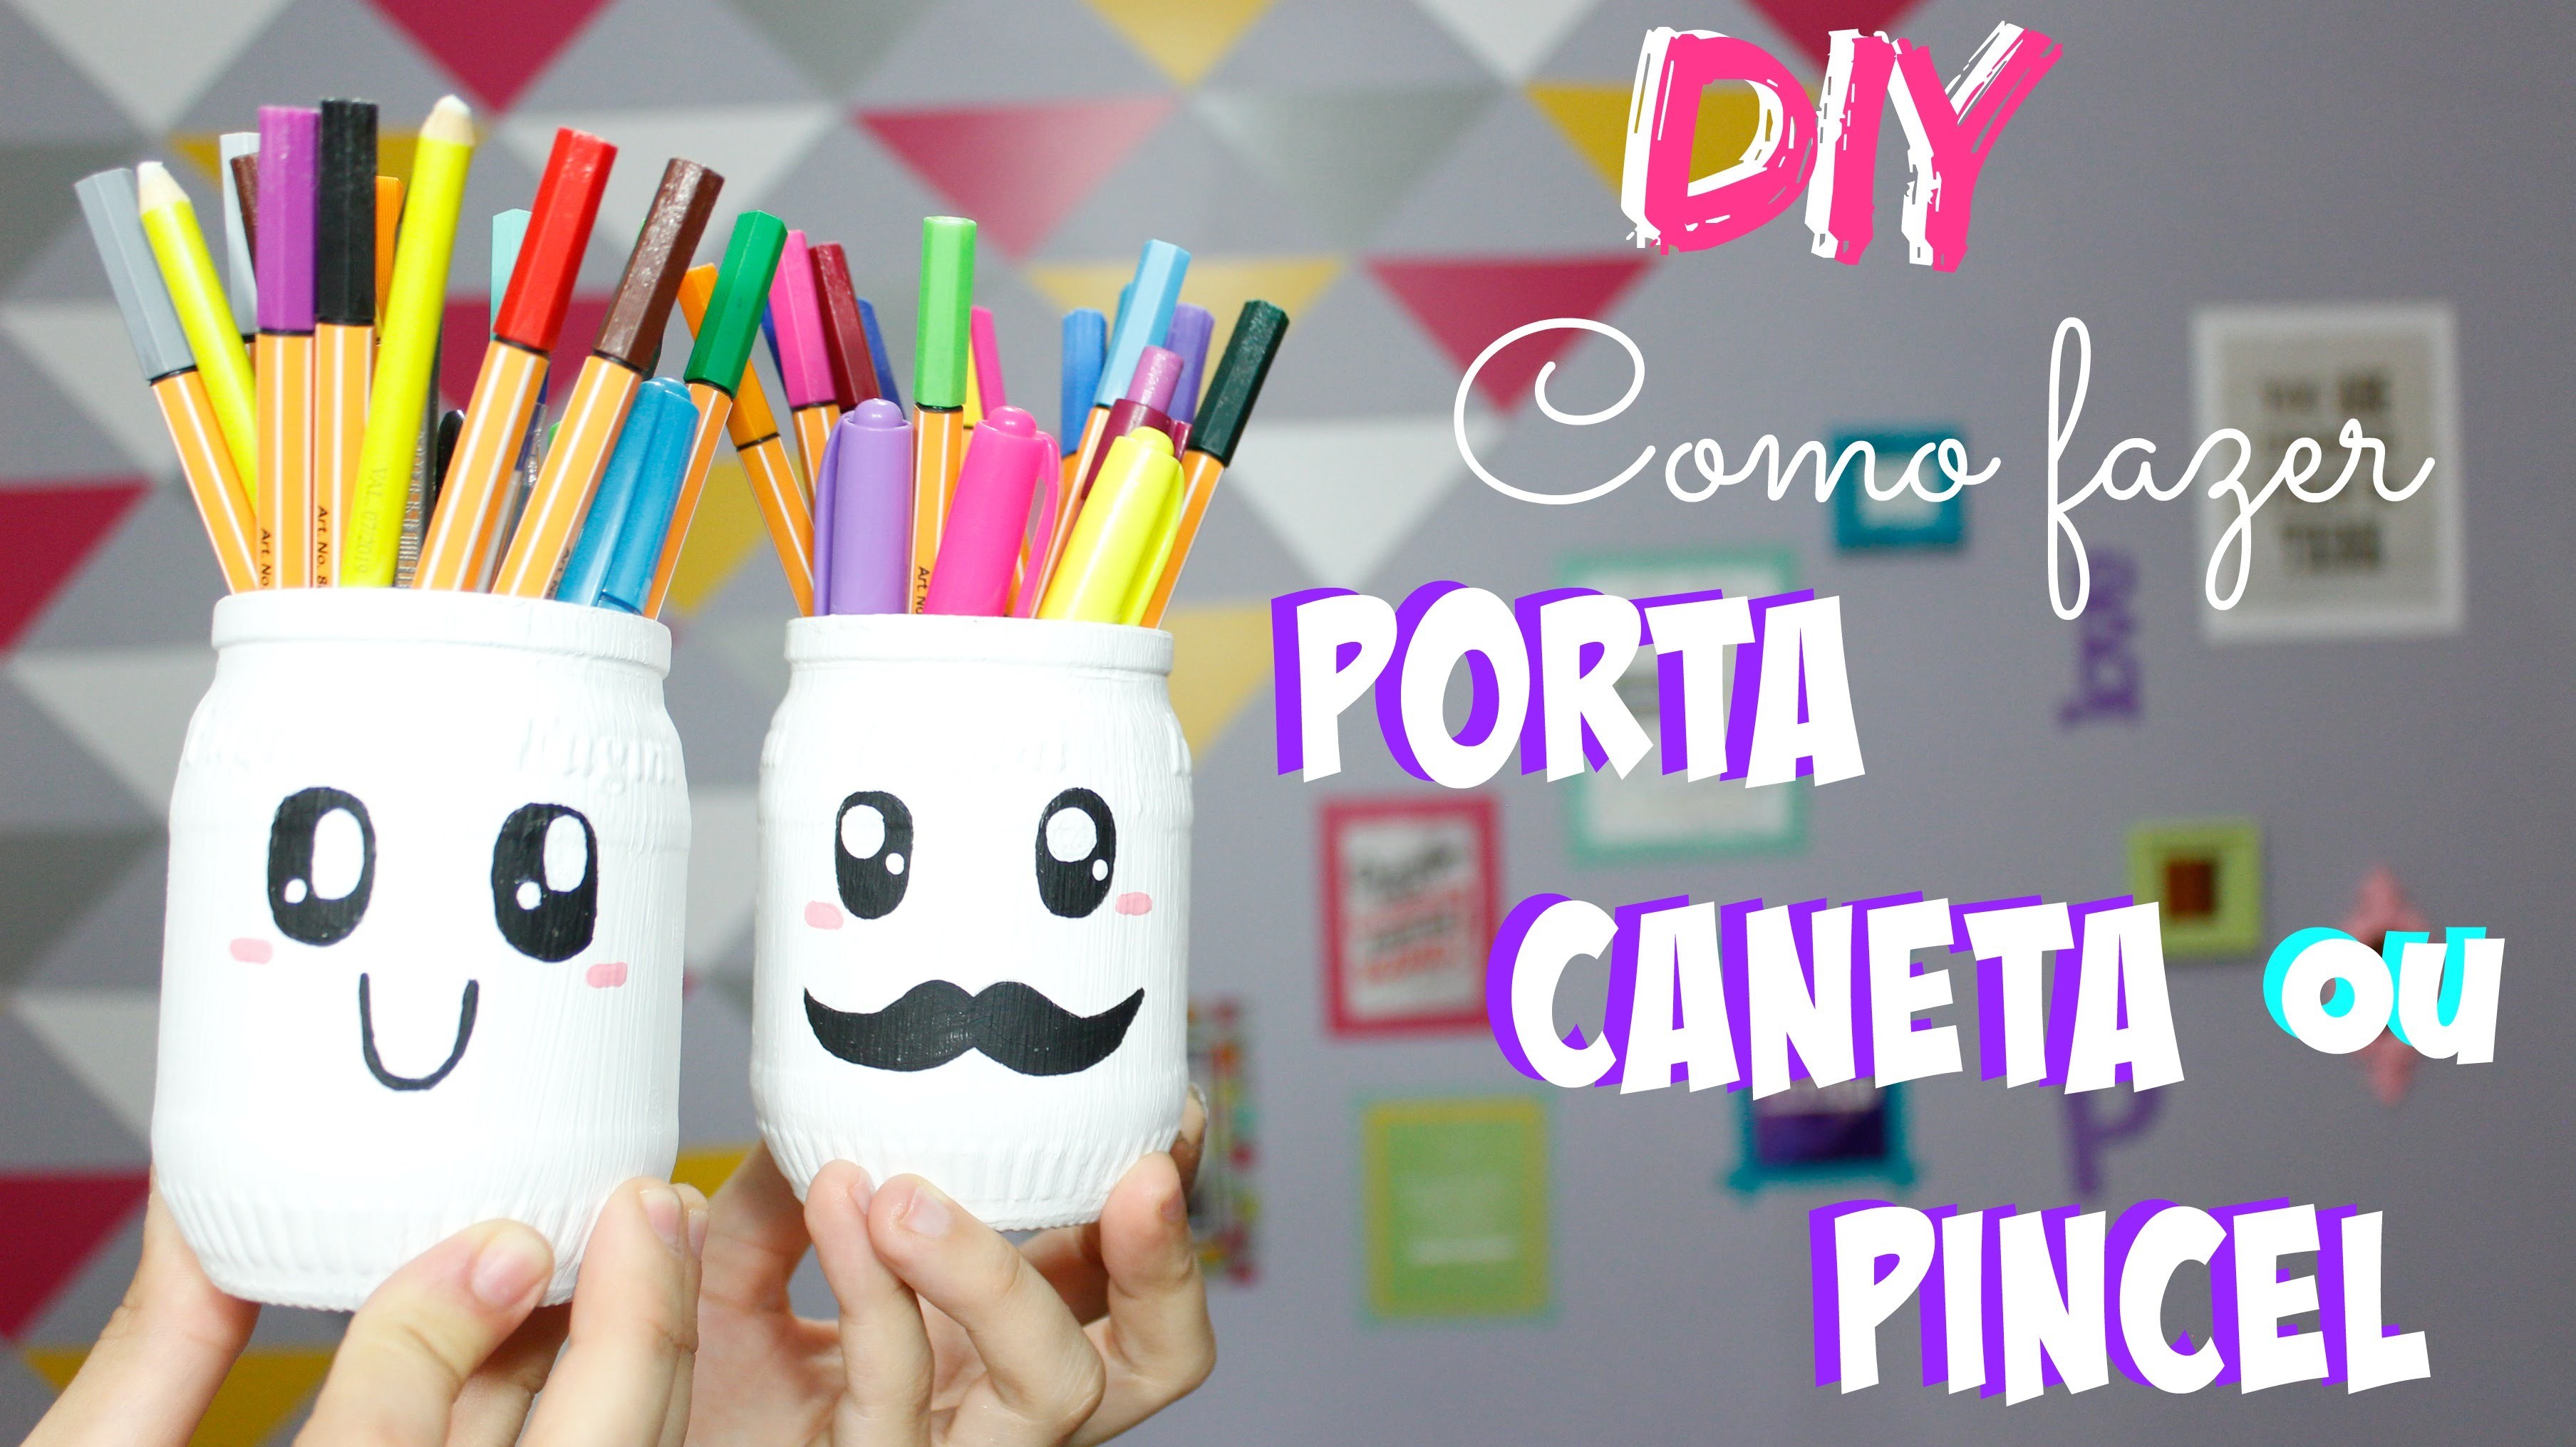 DIY - Como fazer Porta Caneta. Pincel - por Prih Gomes